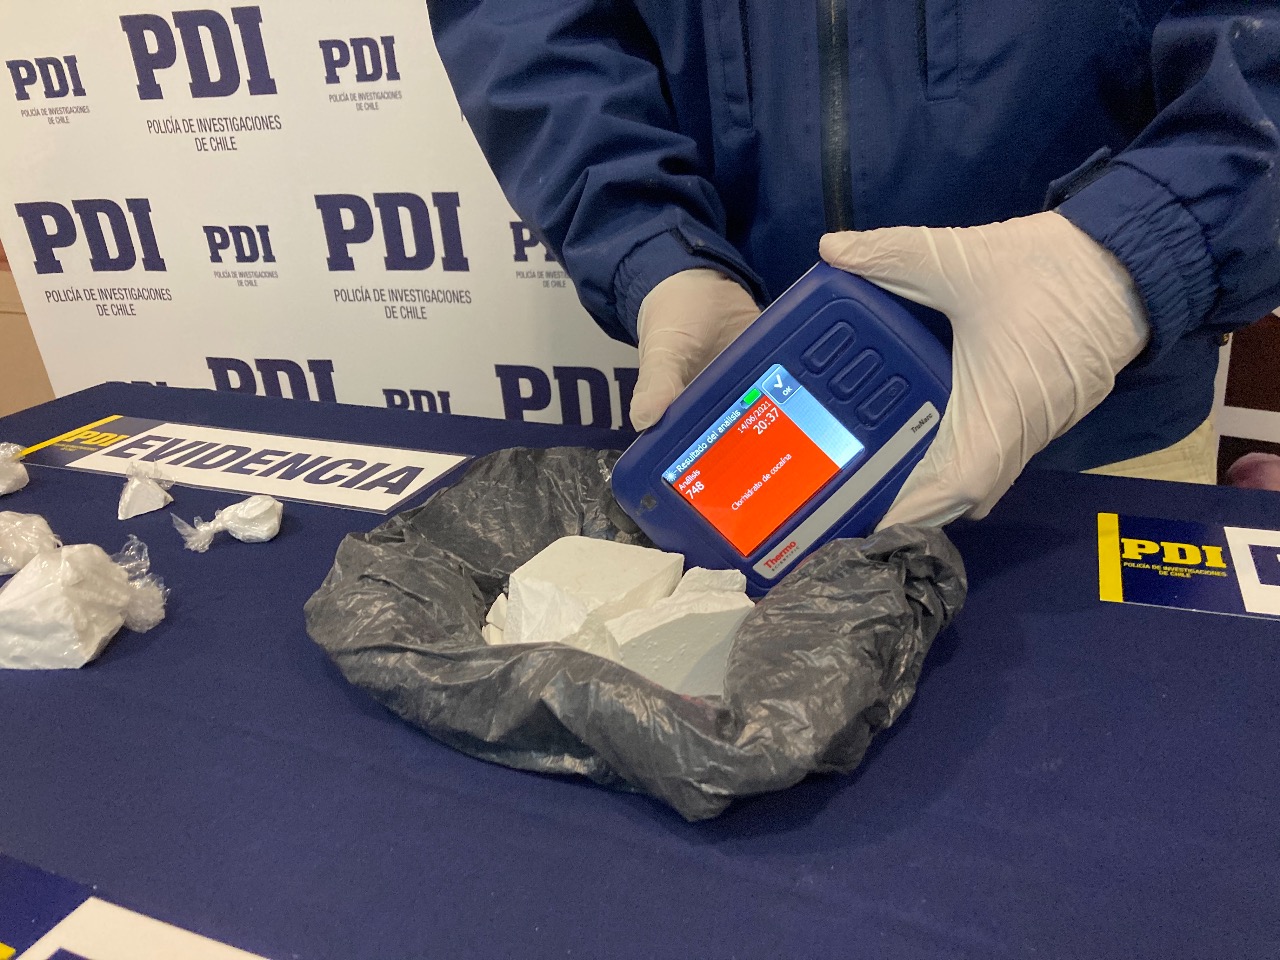 PDI desarticula punto de microtráfico de drogas en Punta Arenas e incauta más de 7 millones de pesos en clorhidrato de cocaína